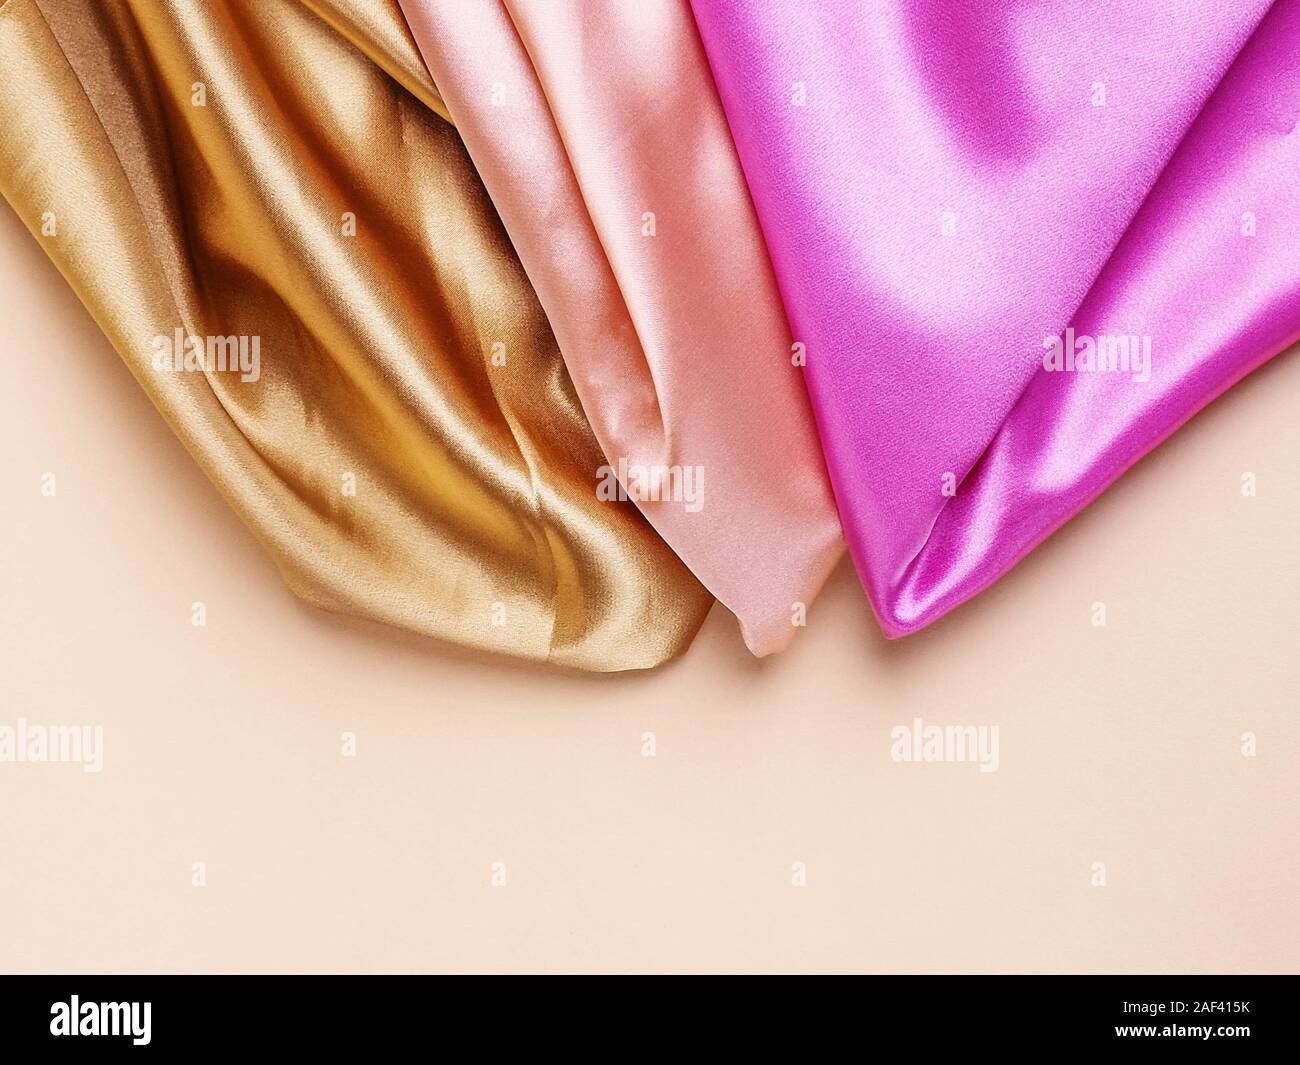 Bunte Stoff Seide stack Hintergrund. Fabric swatches in großen Haufen verschiedener Farben pink, silber gestapelt, Gelb und Blau. Kleidung aus zarten v Stockfoto